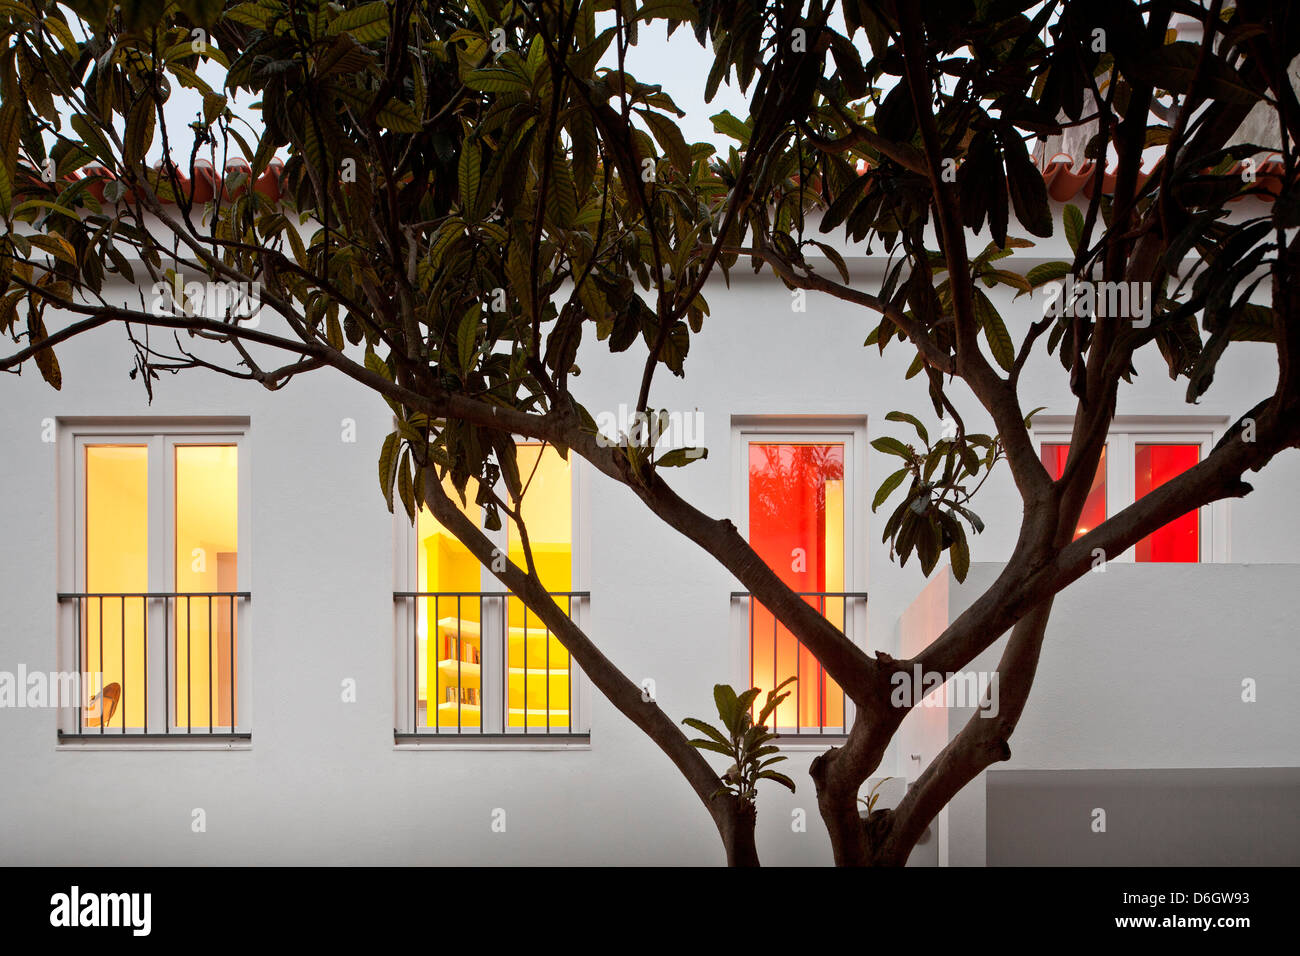 Casa em Almada, Almada, Portugal. Architect: Pedro Gadanho, 2012. Evening view of facade with lit interior. Stock Photo